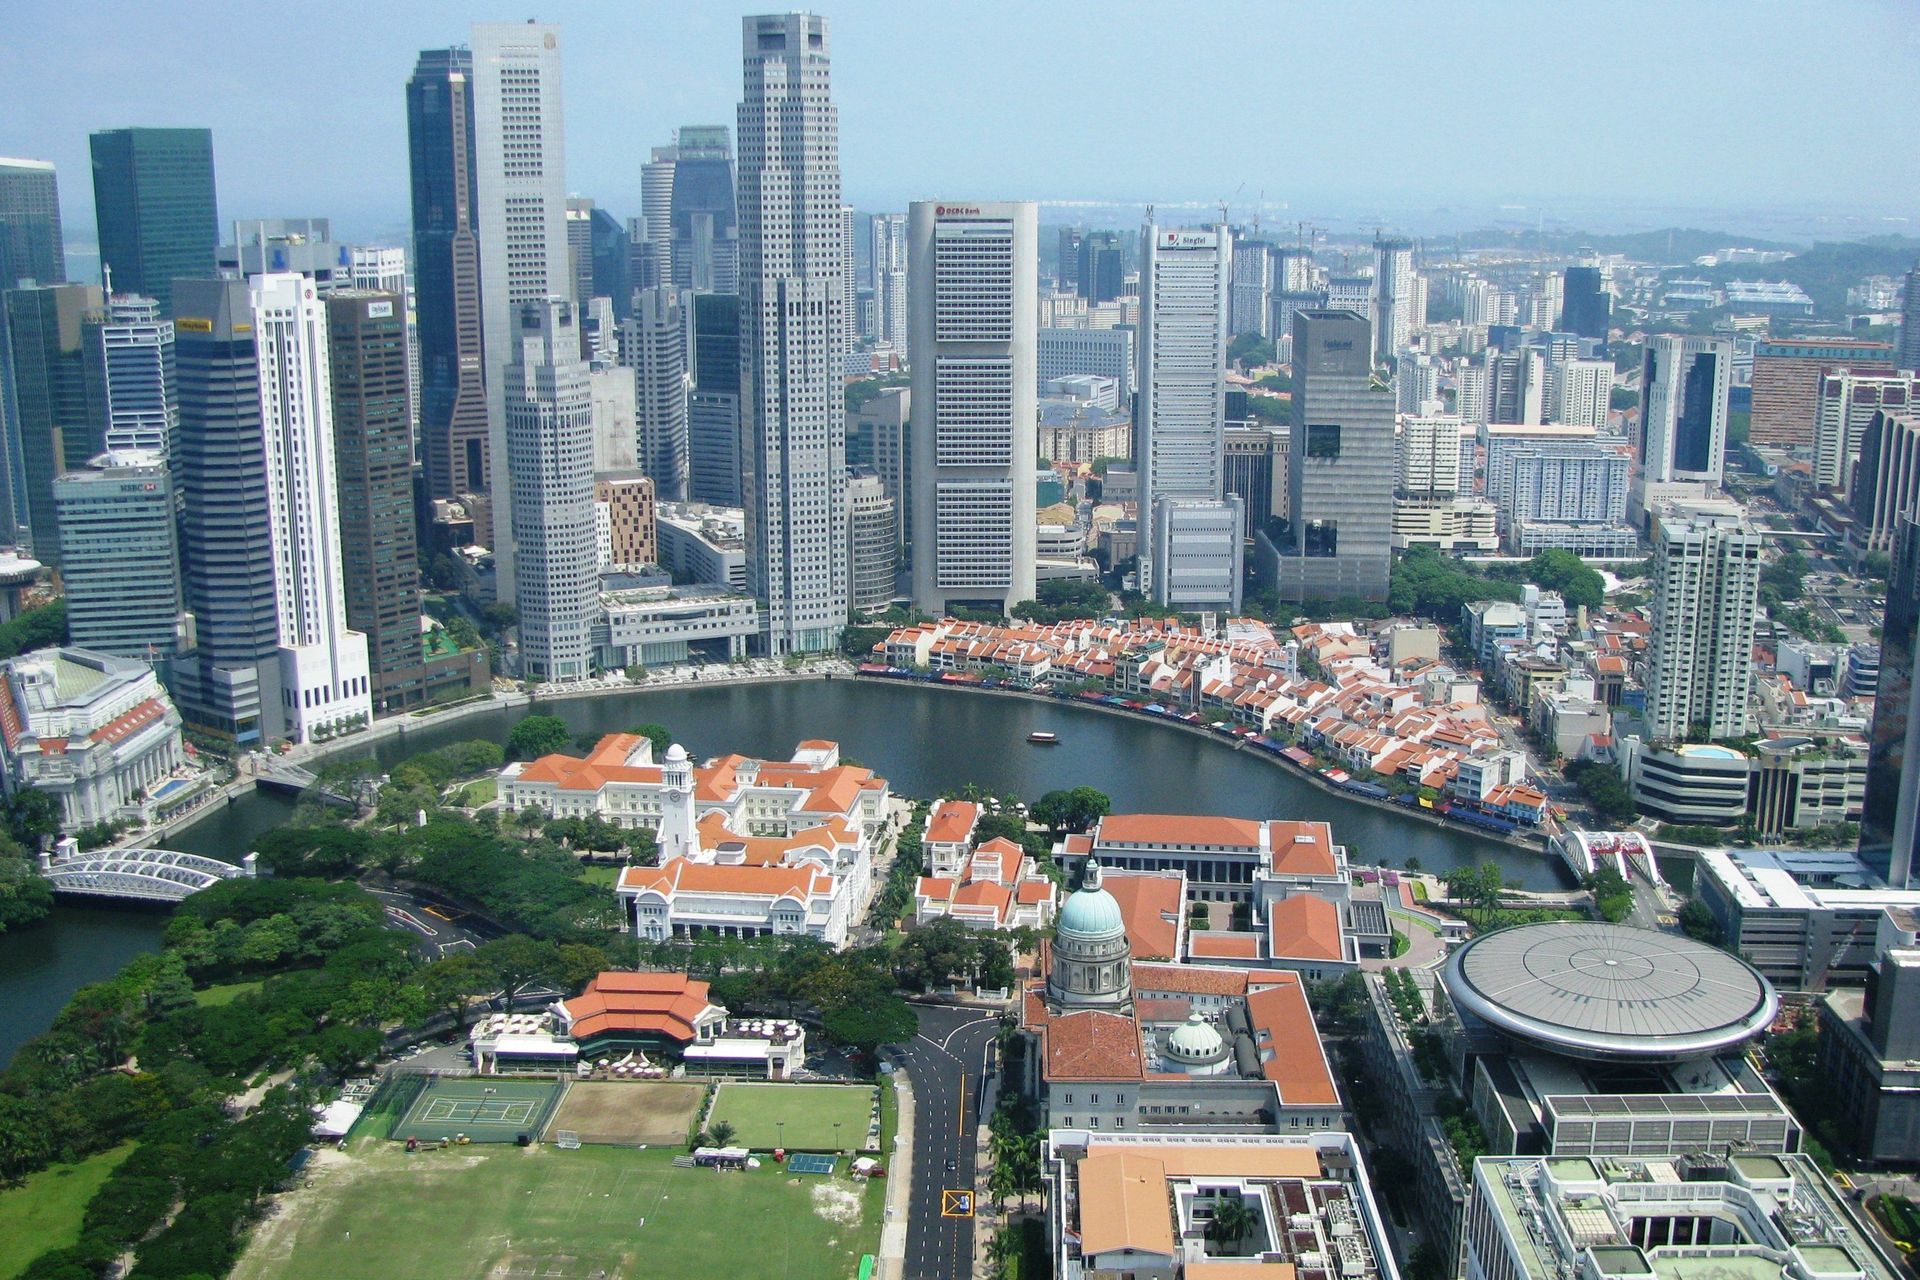 Una veduta del centro cittadino di Singapore con l'ampio Padang verde